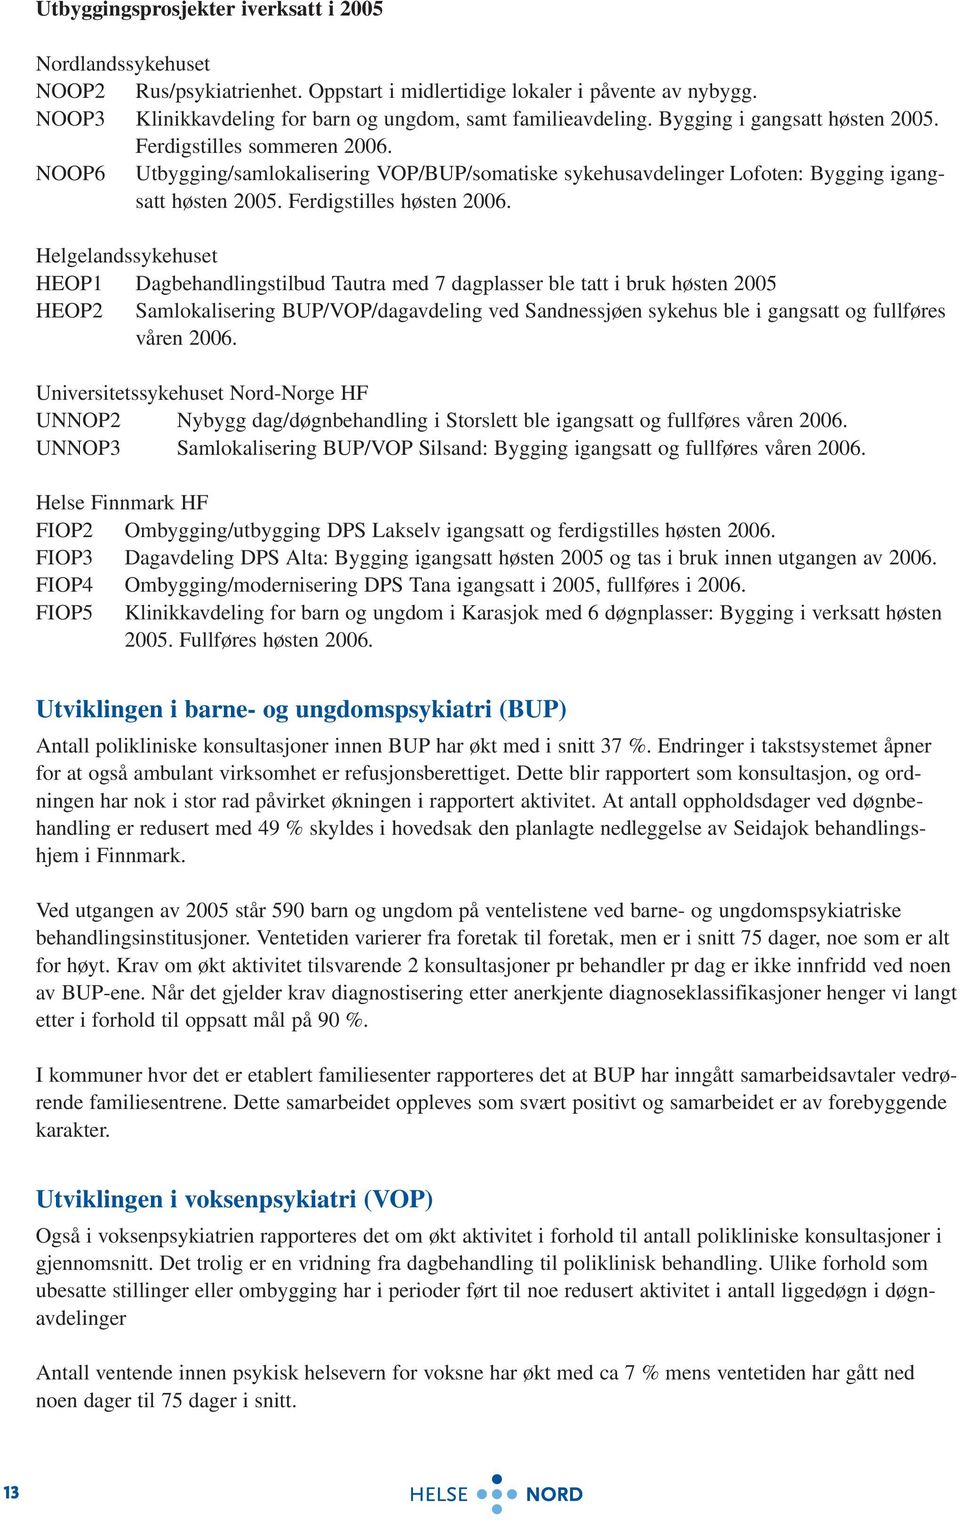 Helgelandssykehuset HEOP1 Dagbehandlingstilbud Tautra med 7 dagplasser ble tatt i bruk høsten 2005 HEOP2 Samlokalisering BUP/VOP/dagavdeling ved Sandnessjøen sykehus ble i gangsatt og fullføres våren